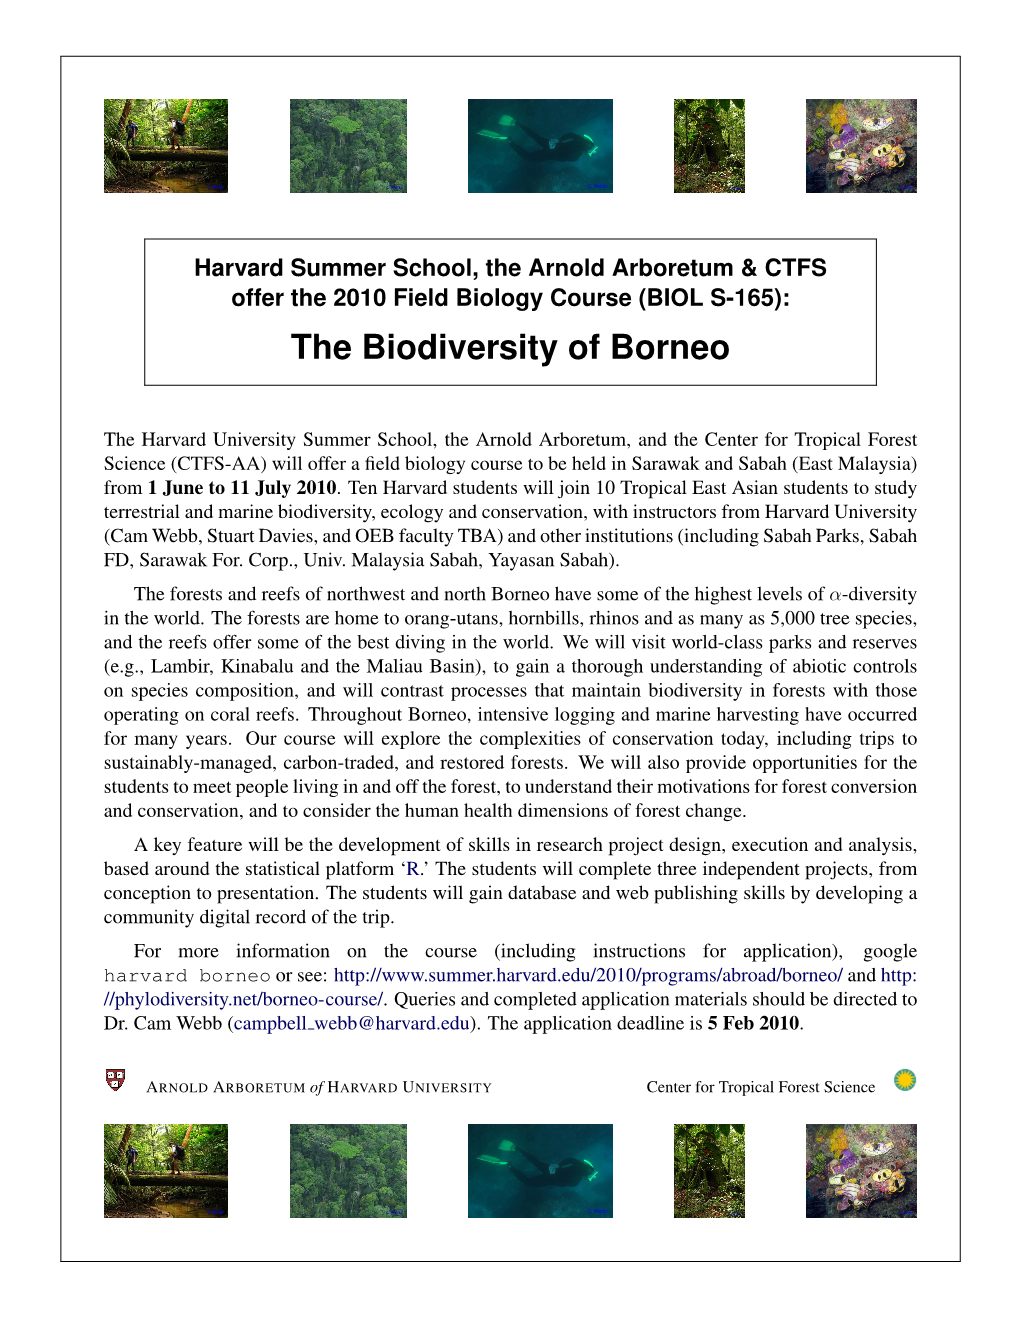 The Biodiversity of Borneo